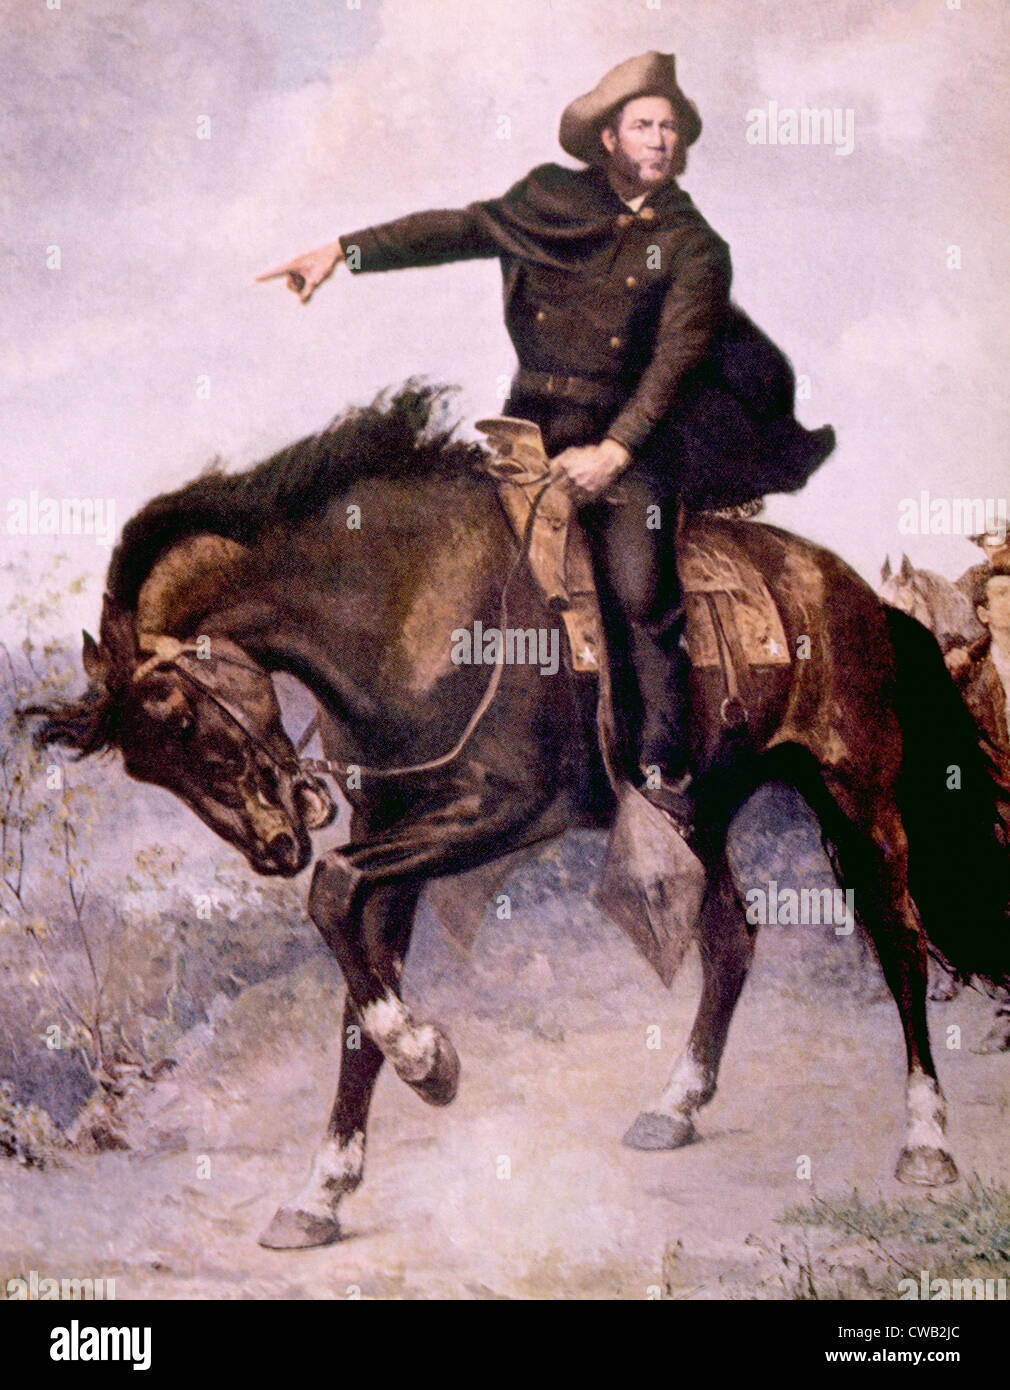 Generale Sam Houston nella battaglia di San Jacinto in 1936, dipinto di S. Seymour Thomas Foto Stock